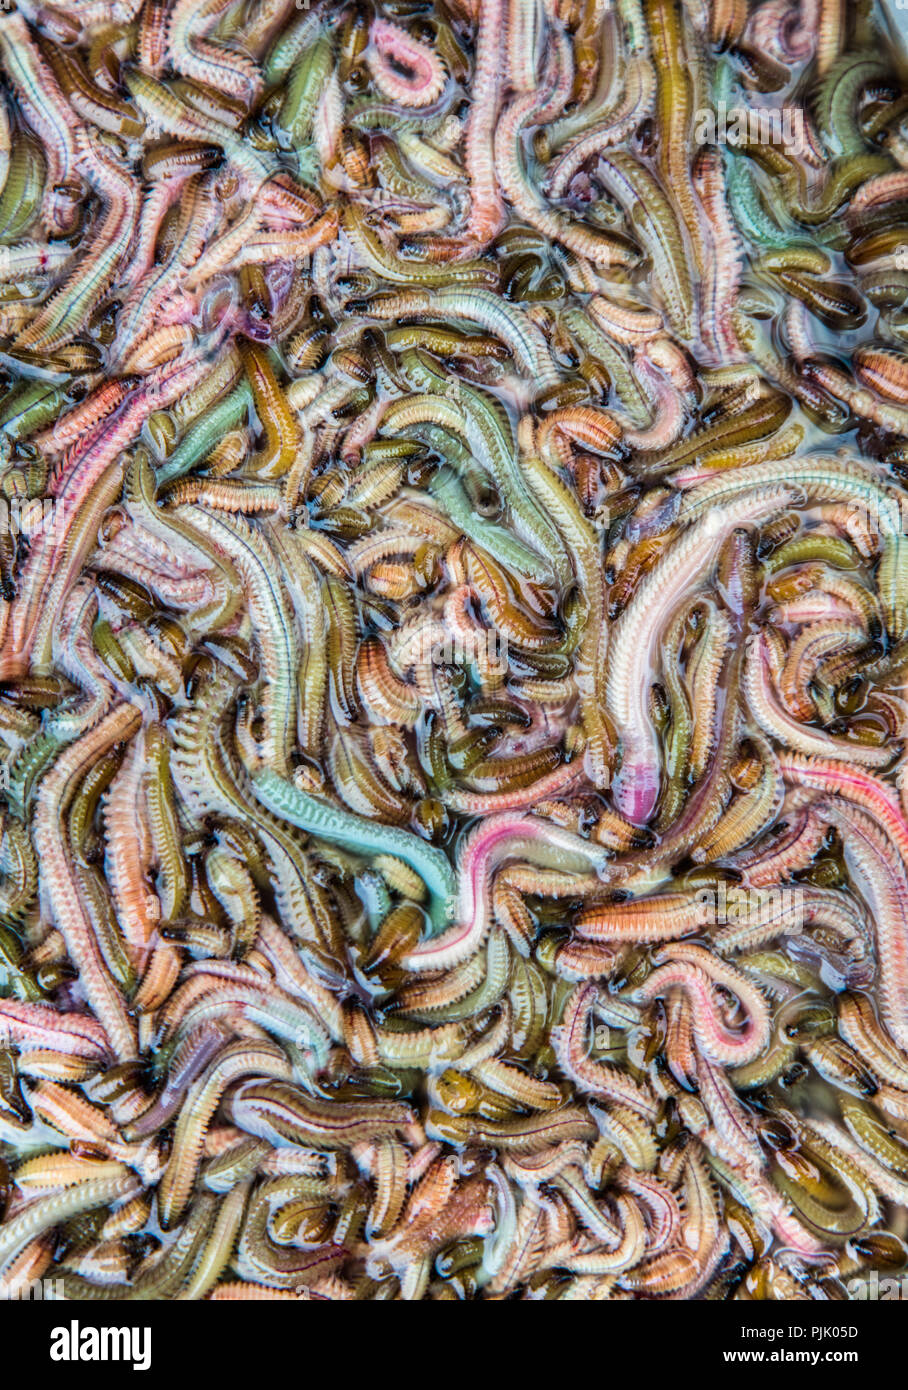 Mare Fresco worm al mercato di mattina nel quartiere storico di Hanoi, Vietnam. Yup. Essi possono essere utilizzati per rendere le frittate, apparentemente Foto Stock